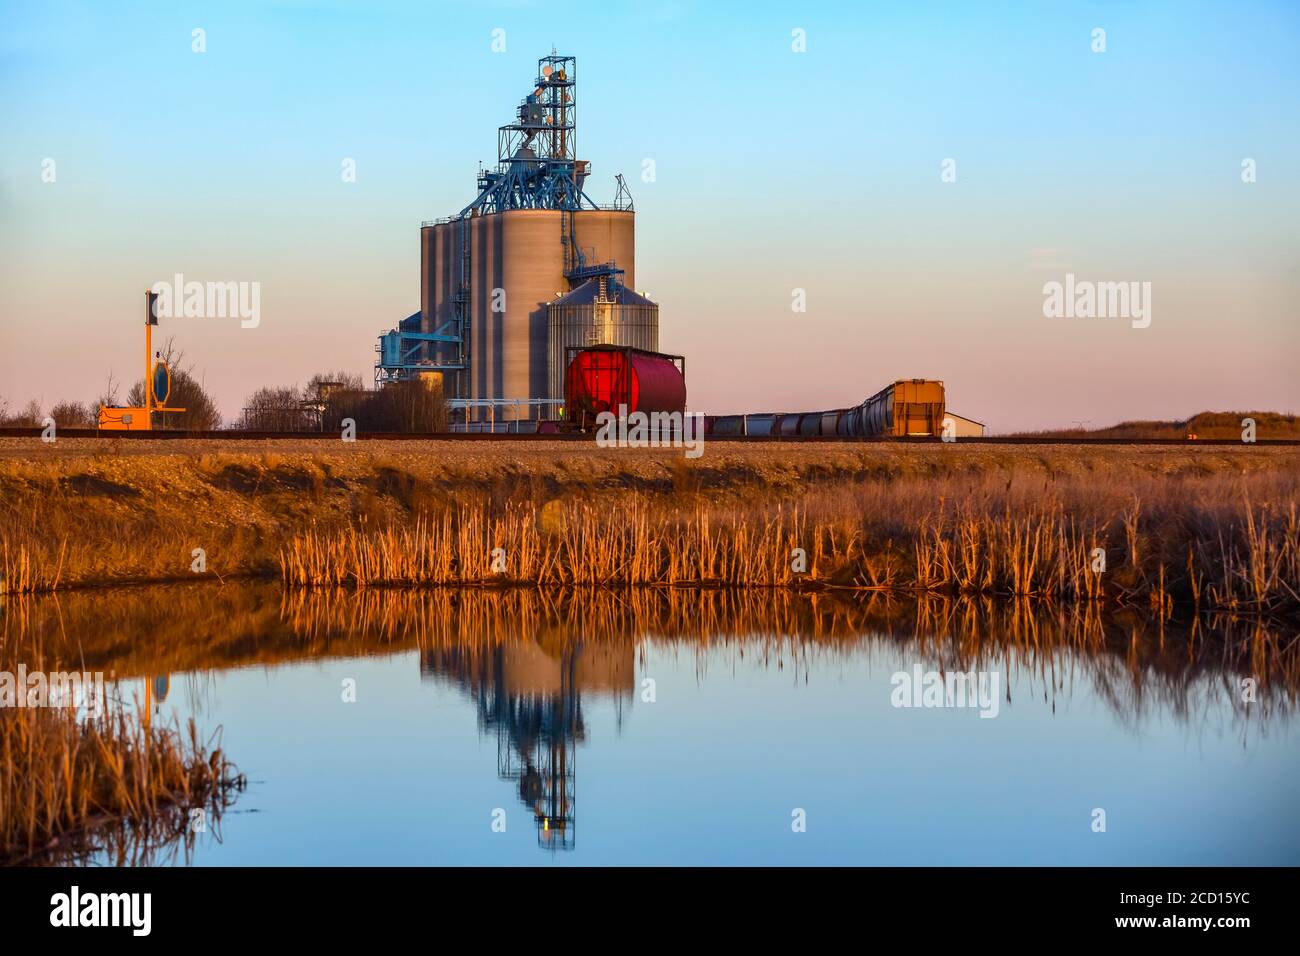 Instalación de almacenamiento de grano y tren en las praderas de Alberta reflejado en el agua; Alberta, Canadá Foto de stock